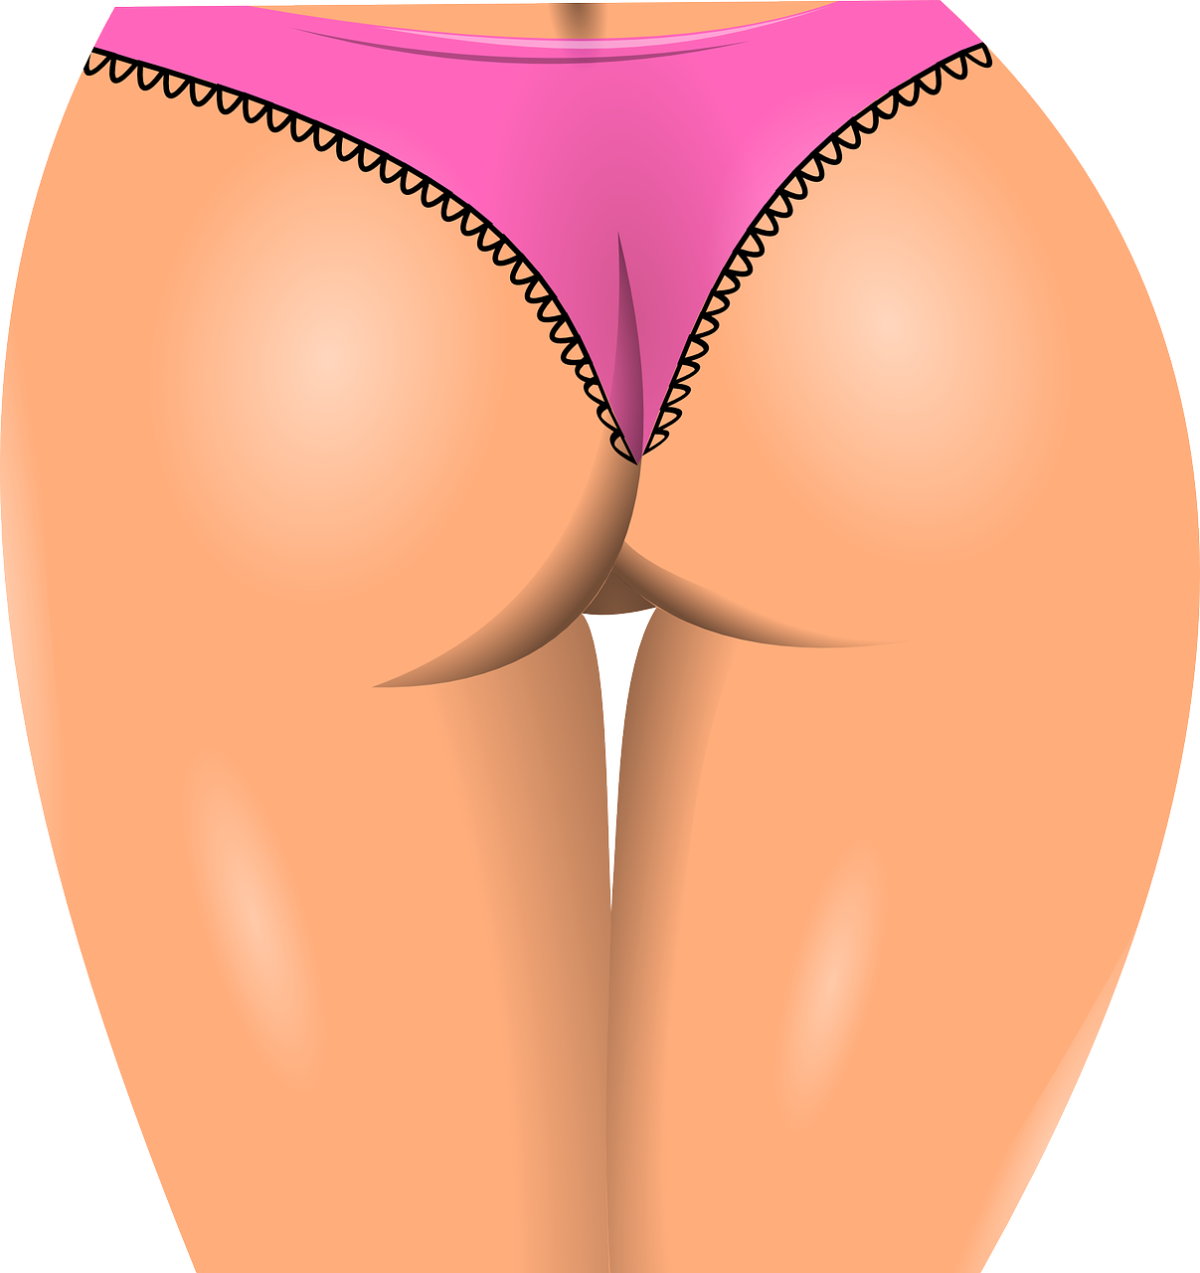 Pragnienie akceptacji wyglądu warg sromowych są motywami konsultacji niewiast z ginekologiem lub chirurgiem plastycznym.